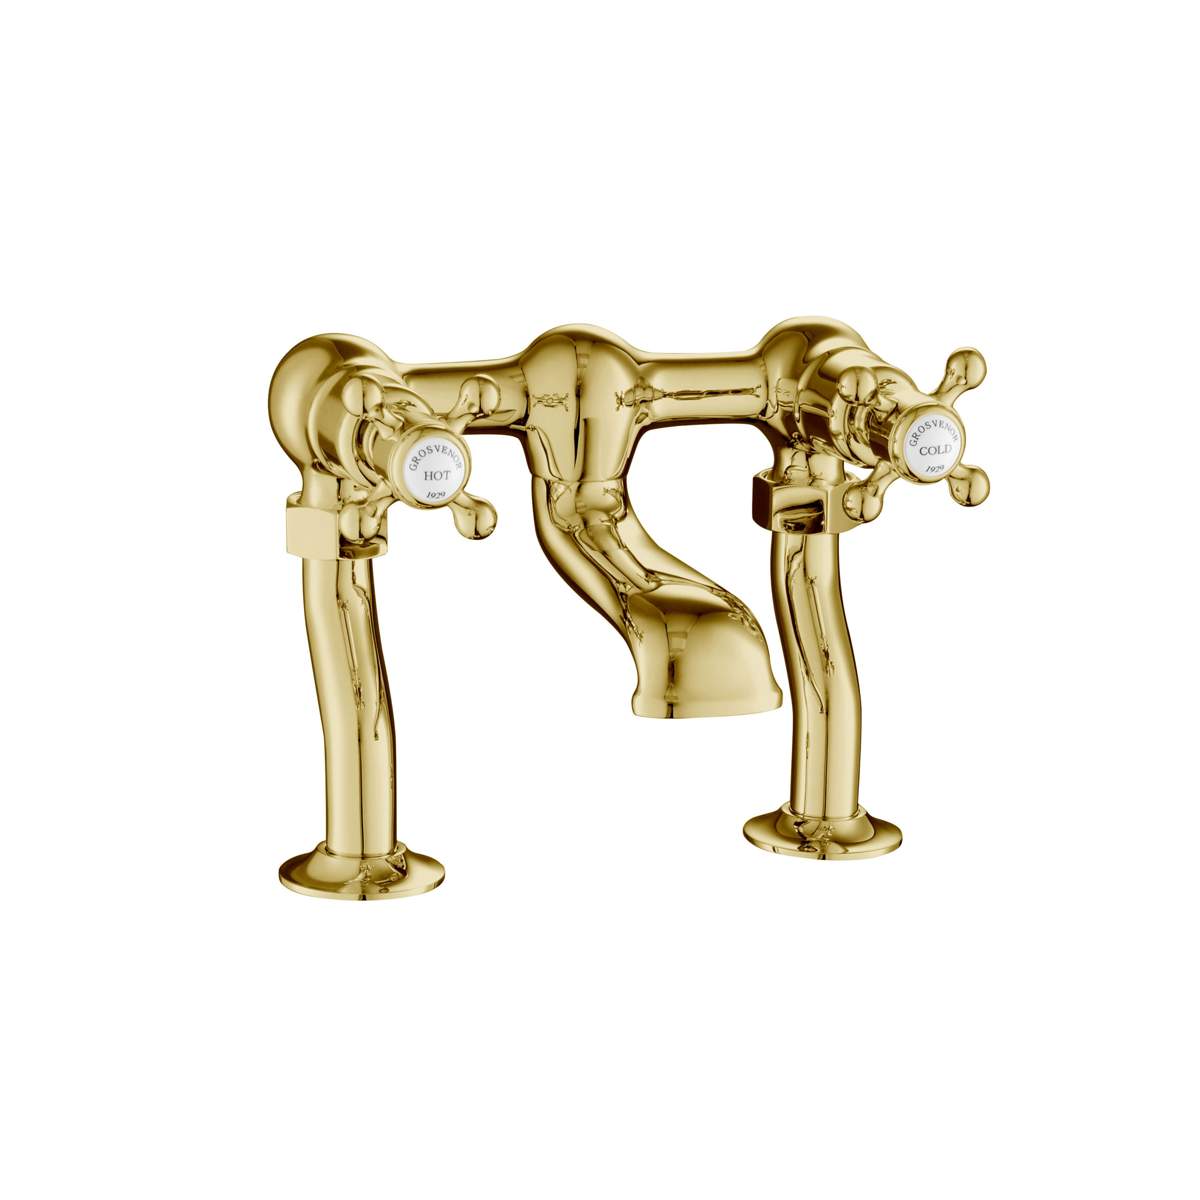 JTP Grosvenor Cross Antique Brass Edition Deck Mounted Bath Filler (76223G)